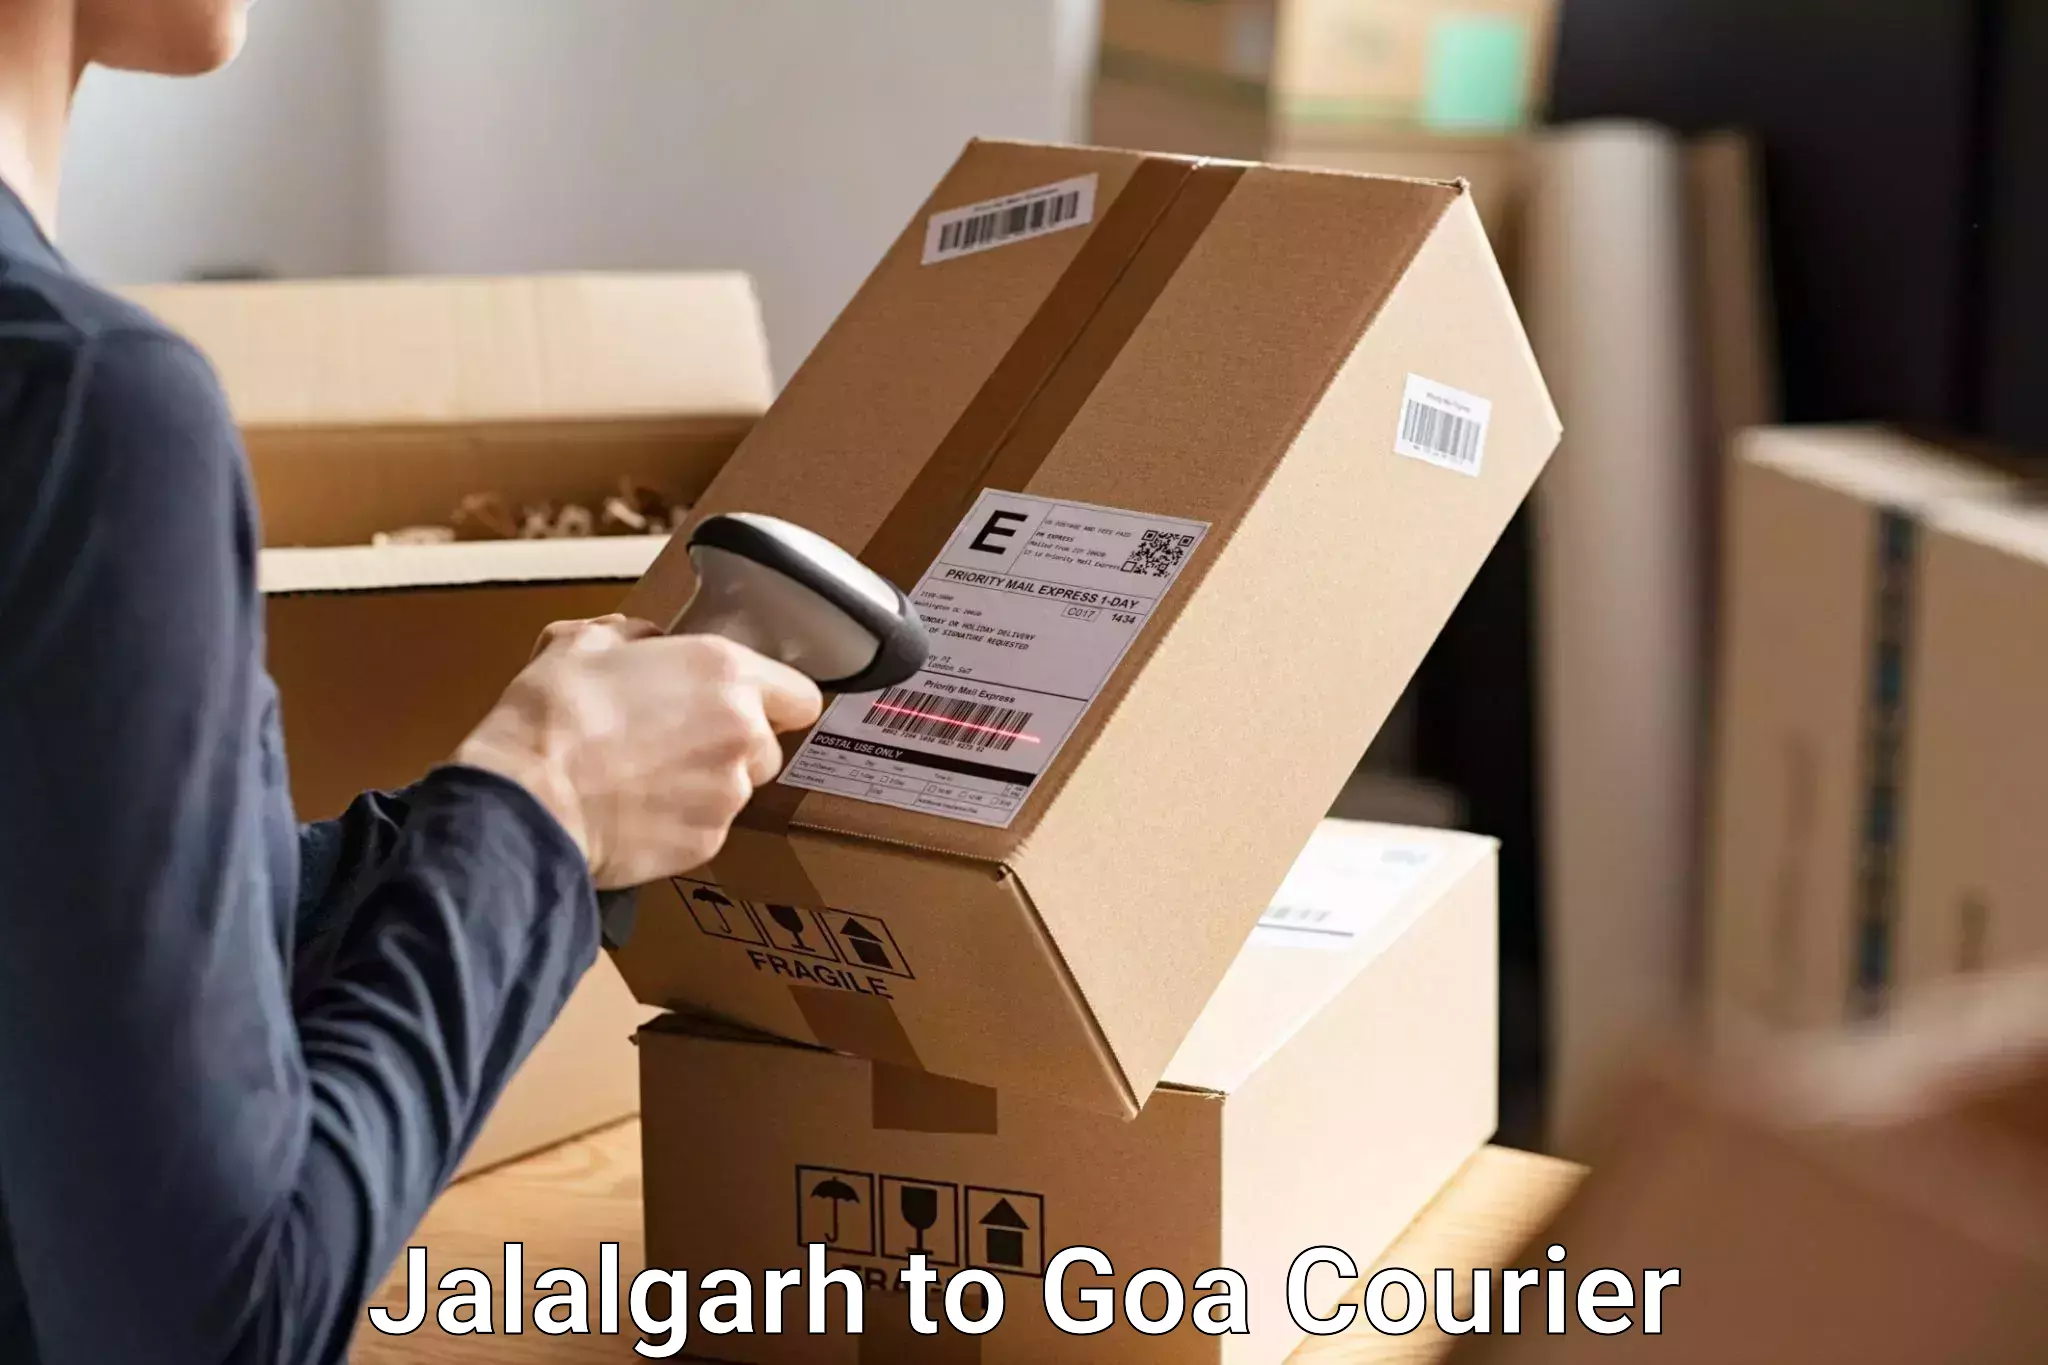 Reliable luggage courier Jalalgarh to Panaji